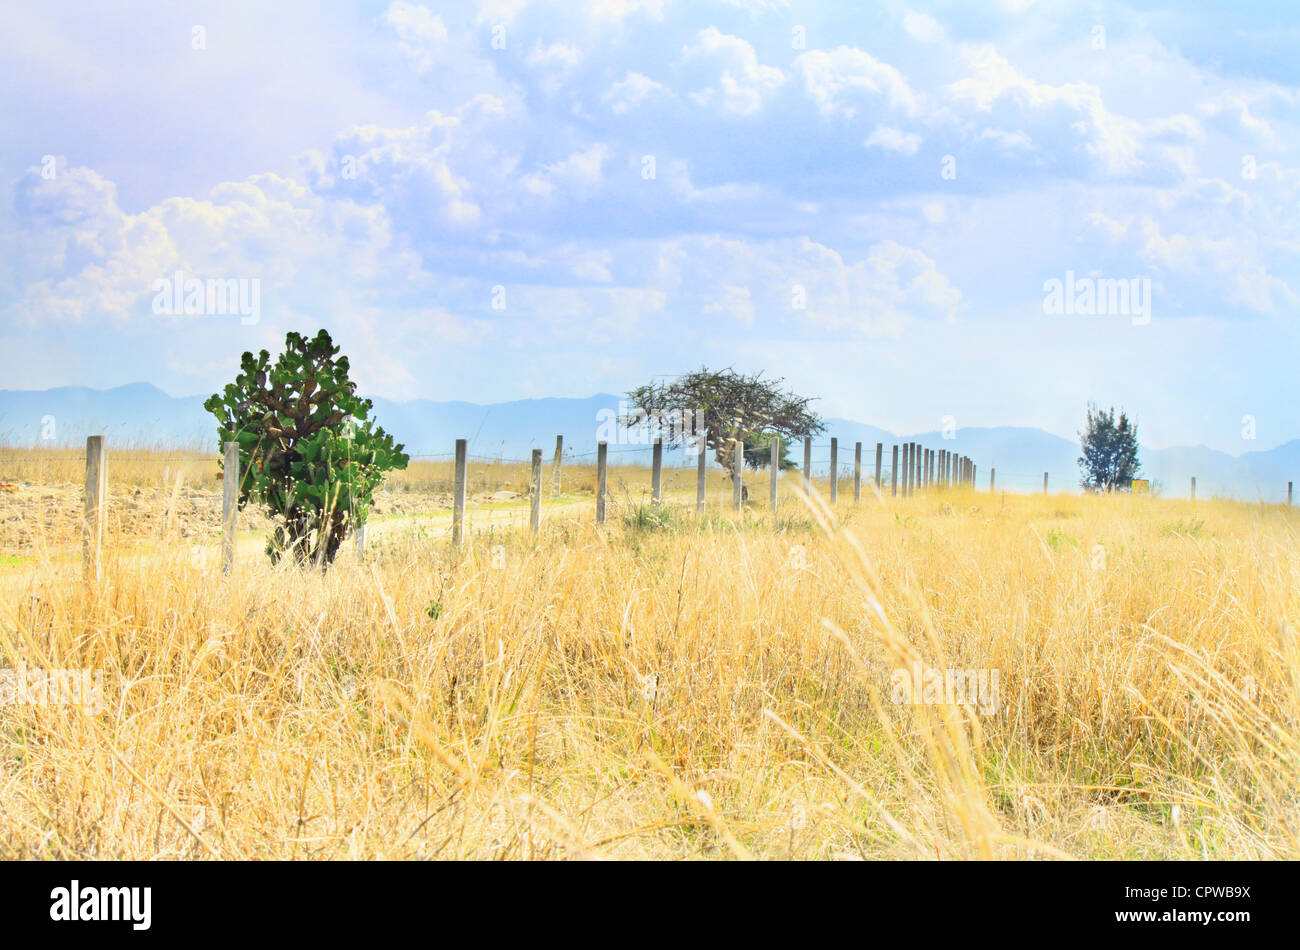 Secco campo erboso con cactus lungo la strada sterrata con pali di recinzioni. isolato, solitaria. erba secca. Foto Stock